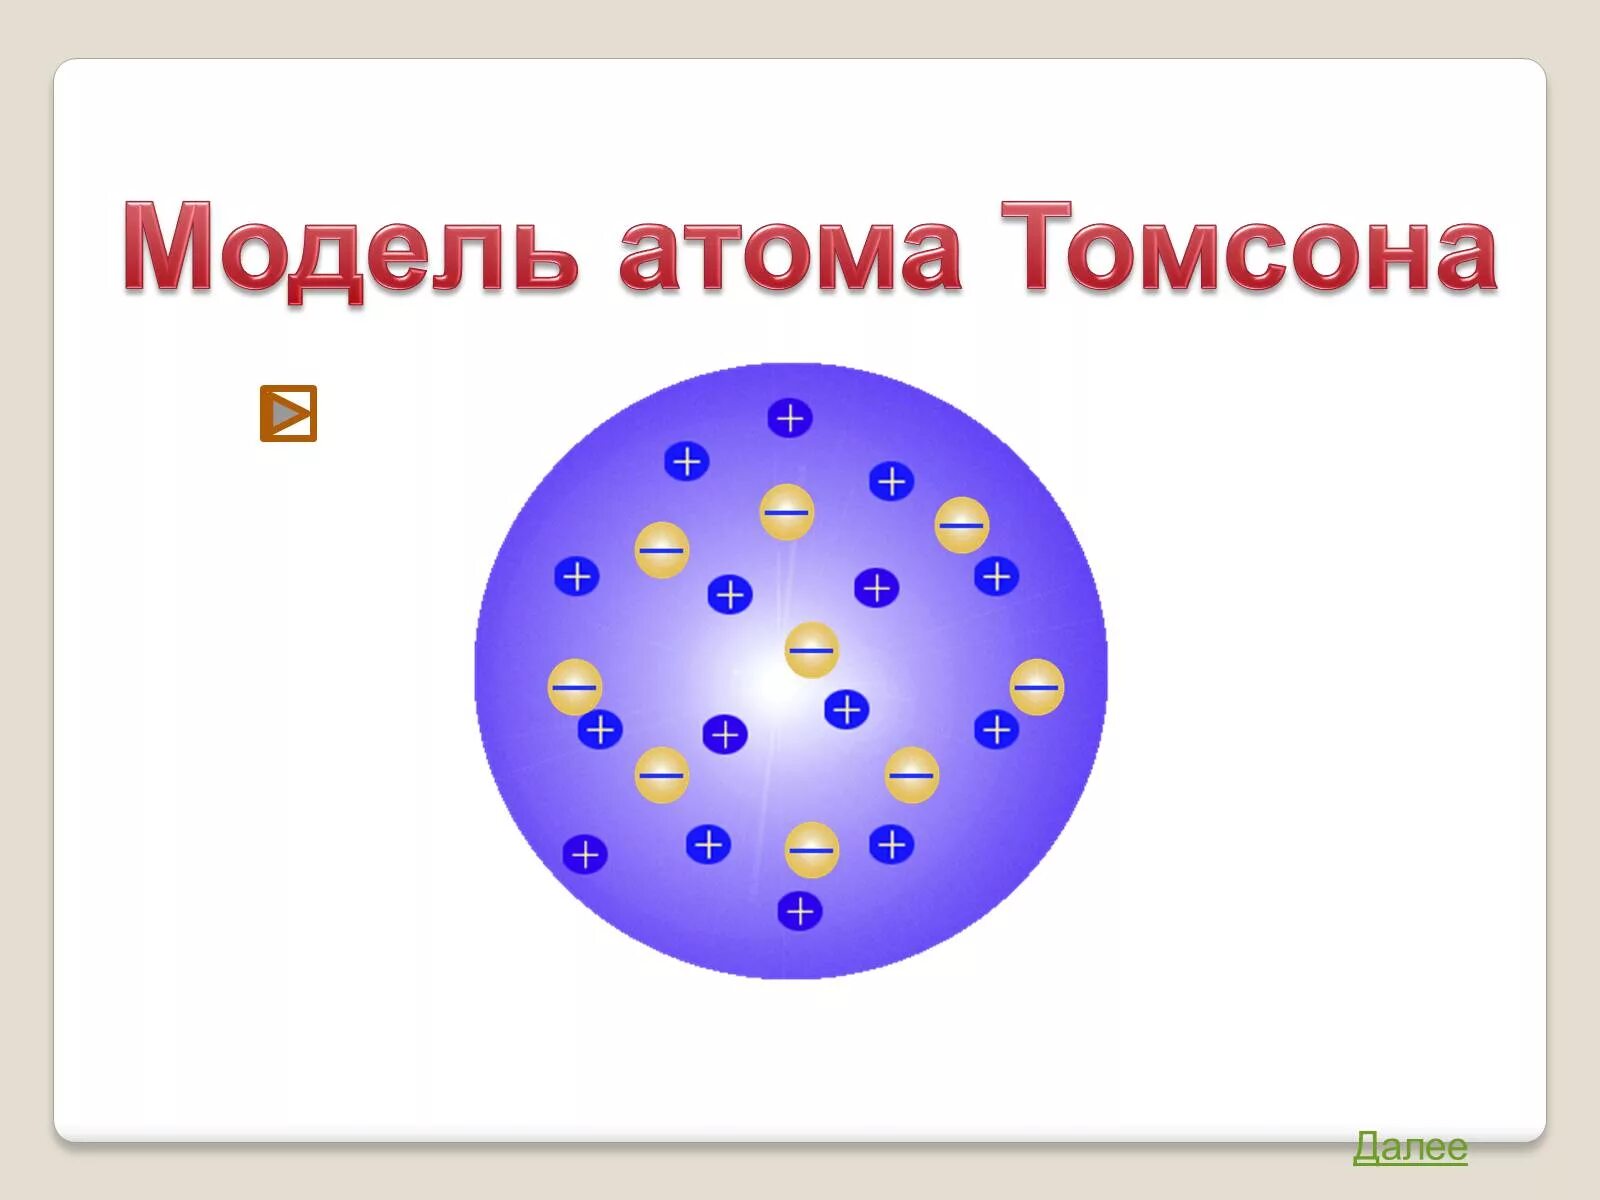 Модели строения атома физика Томпсон. Модель Томсона строение атома. Опыт Томпсона модель атома. Модель атома Томсона физика. Модель атома томсона опыты резерфорда